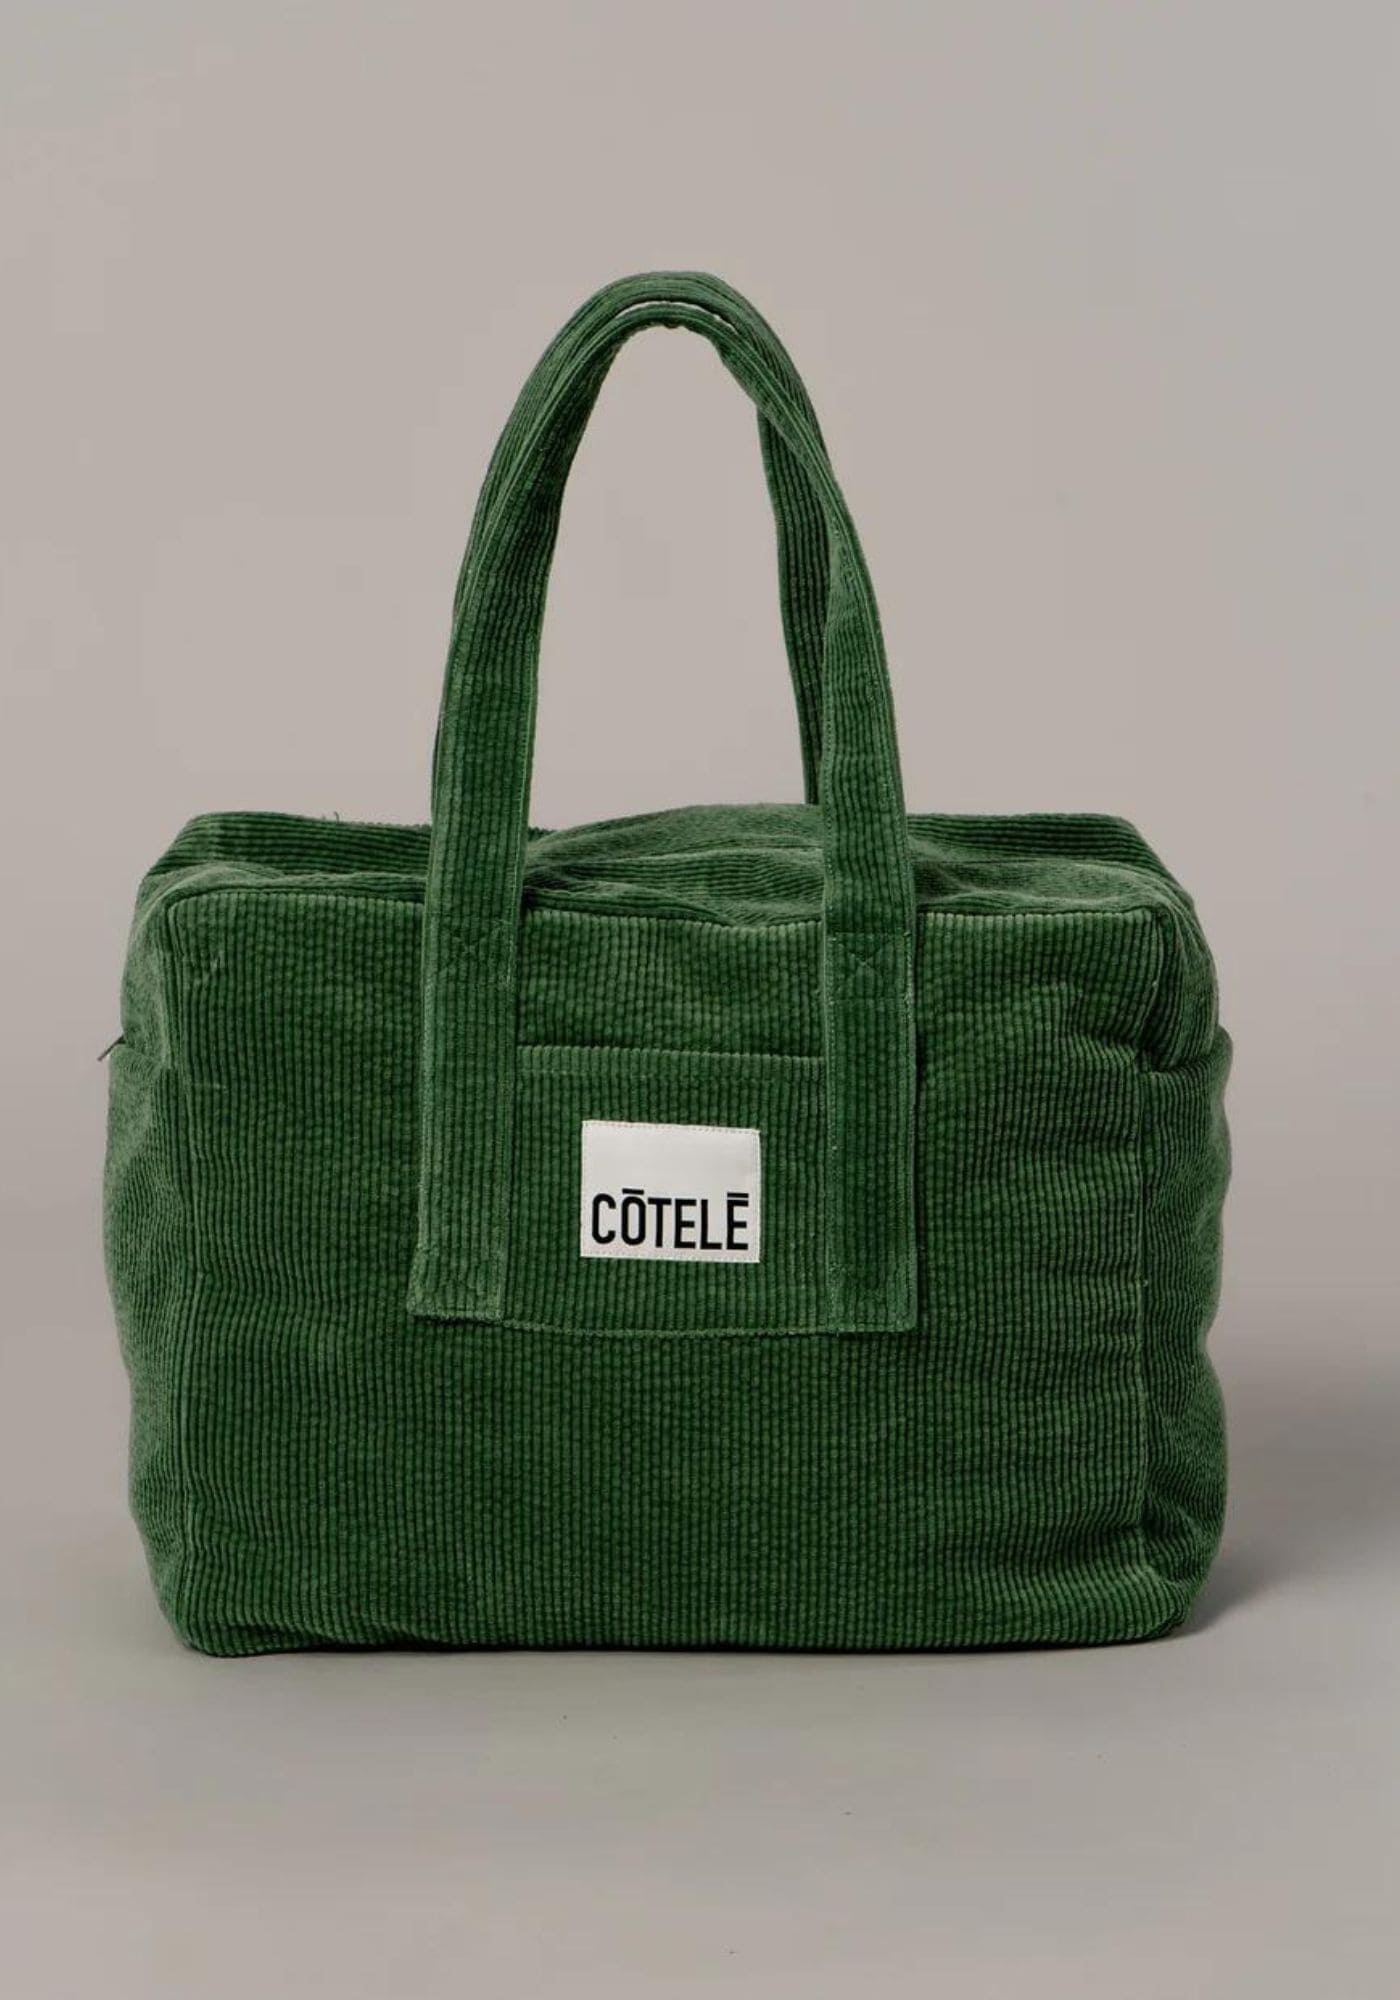 Aperçu du sac en velours vert Côtelé Paris, vue de face